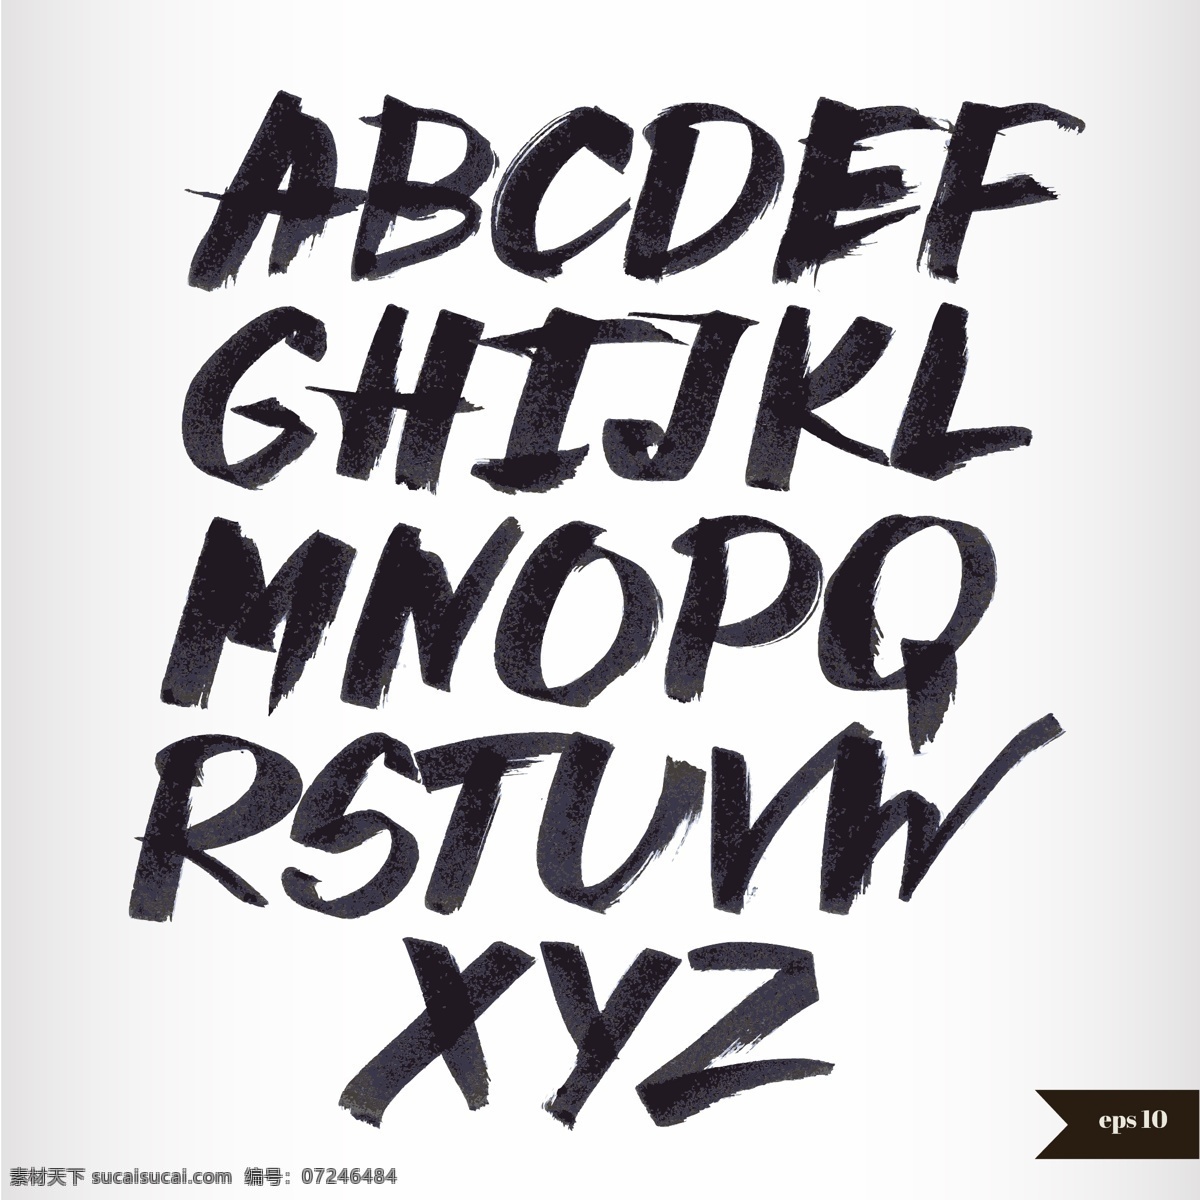 字母设计 英文字母 水墨字母 水彩 手绘字母 拼音 创意字母 矢量